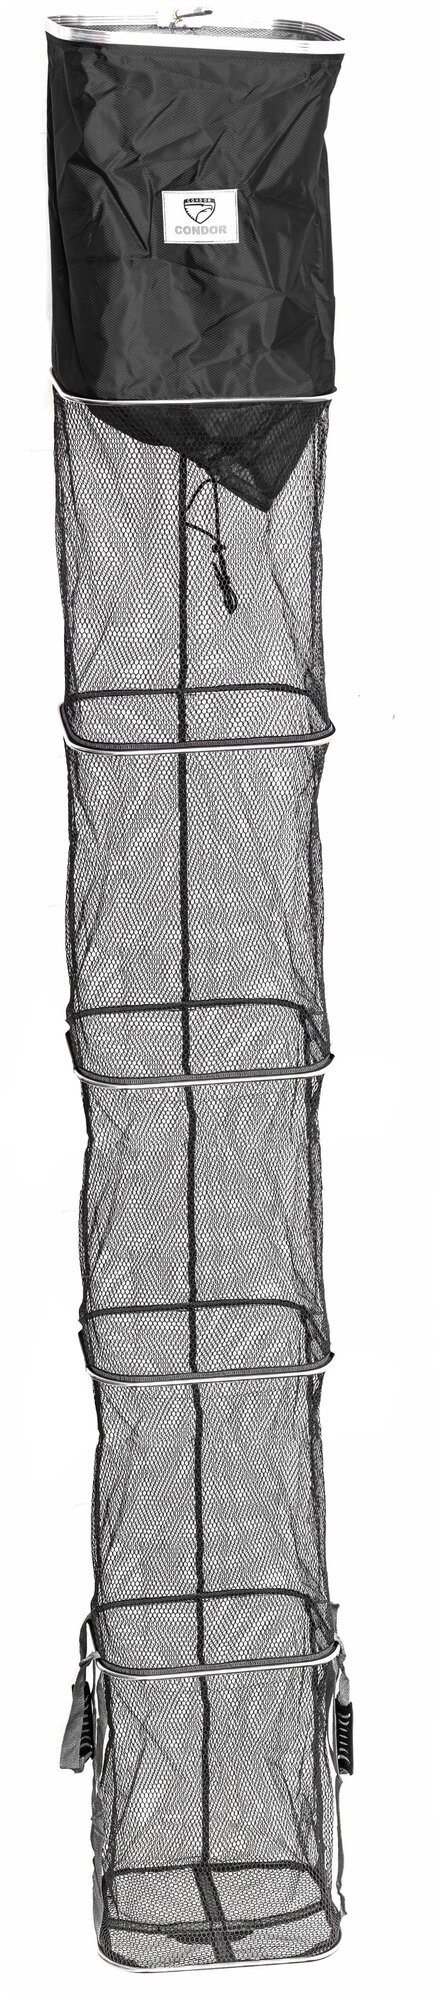 Садок CONDOR спортивный прямоугольный 6-ти секционный длина 30 м чехол